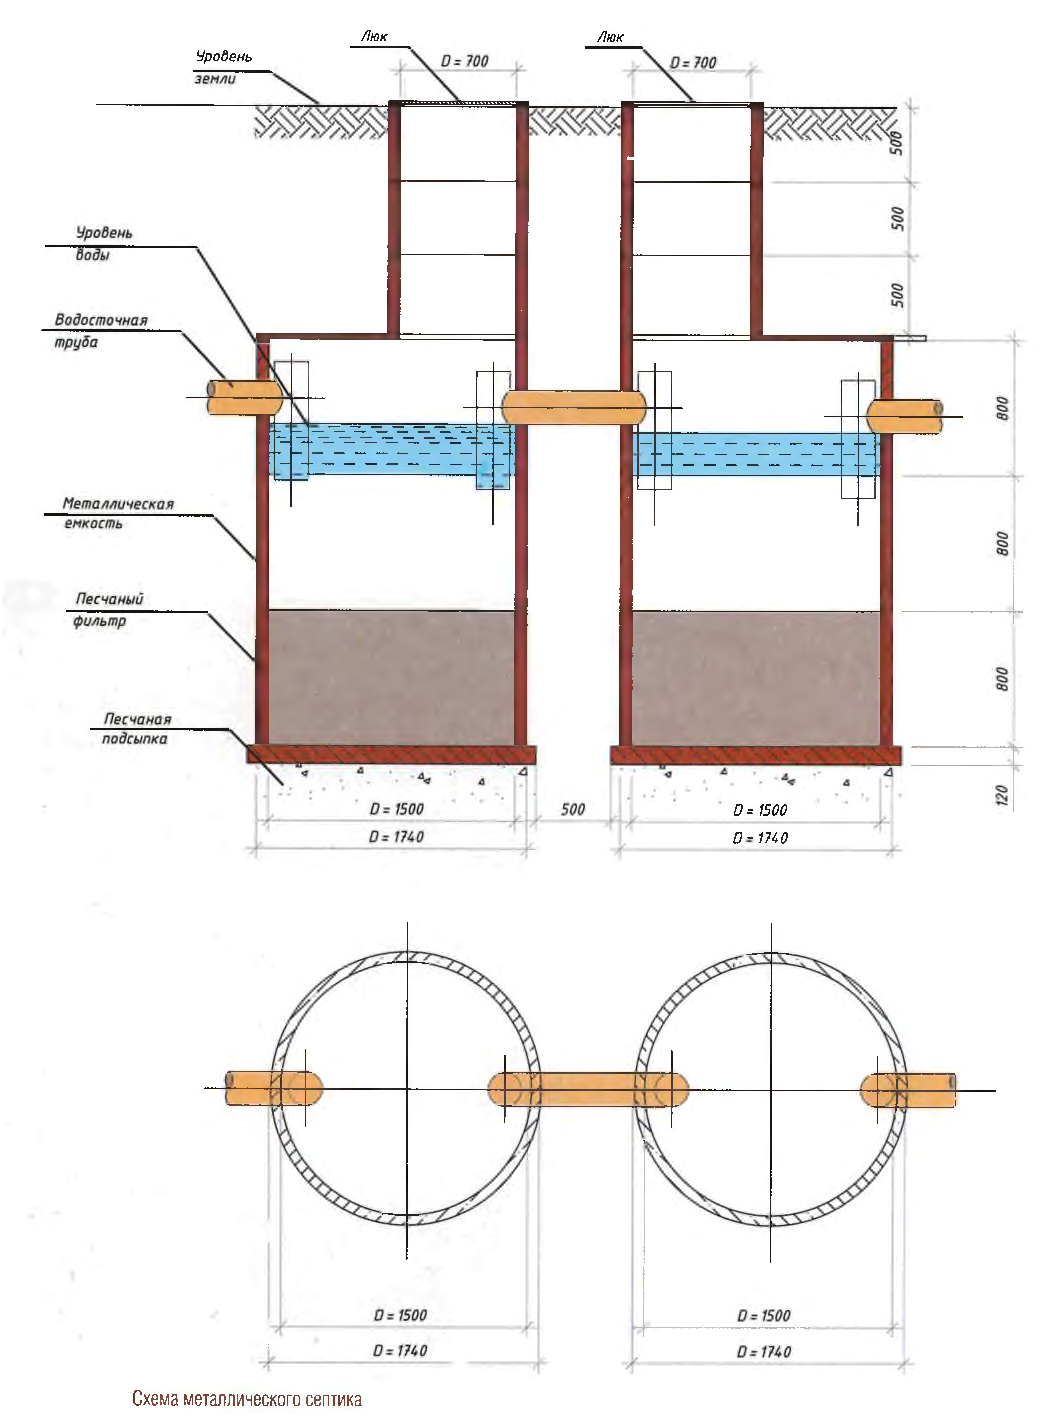 Как сделать септик из бетонных колец: основные этапы и правила монтажа с фото